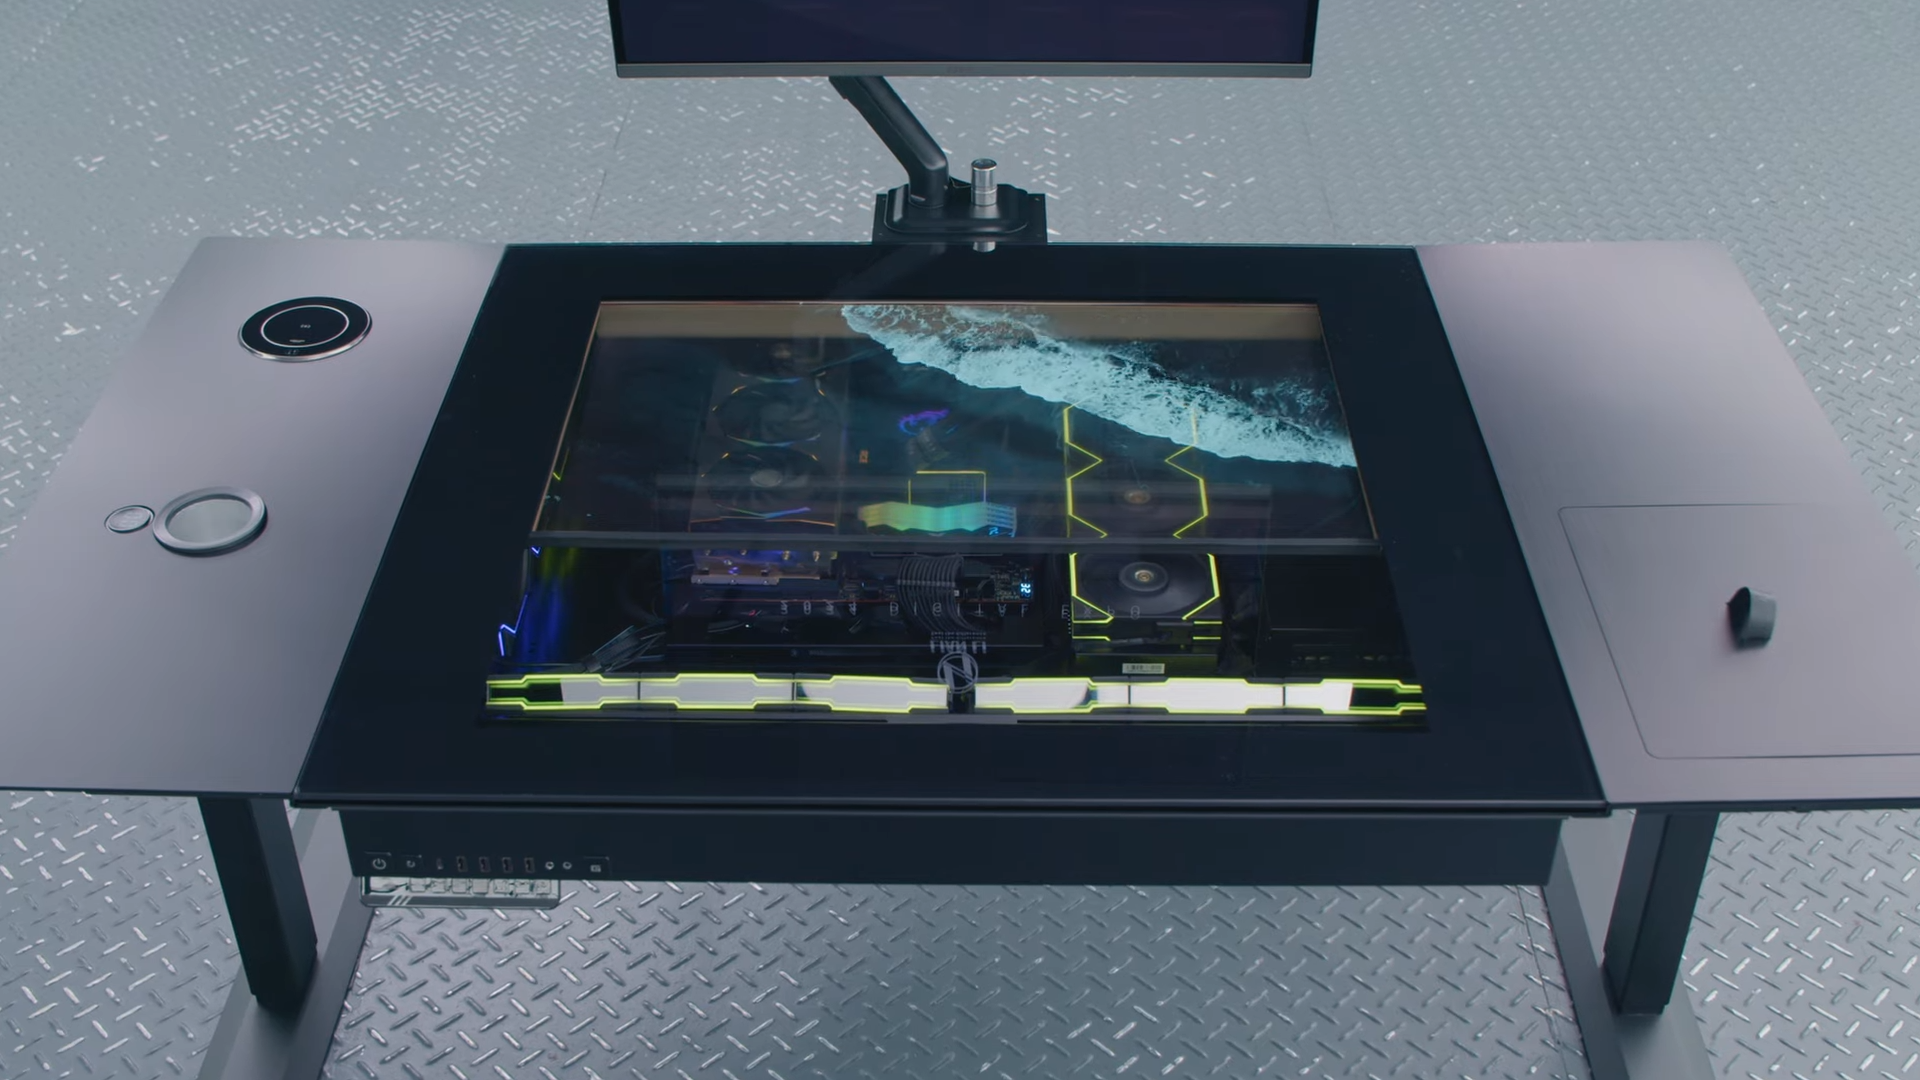 Lian Li hat das DK-07 vorgestellt - das originelle PC-Tischgehäuse mit integriertem, transparentem OLED-Display